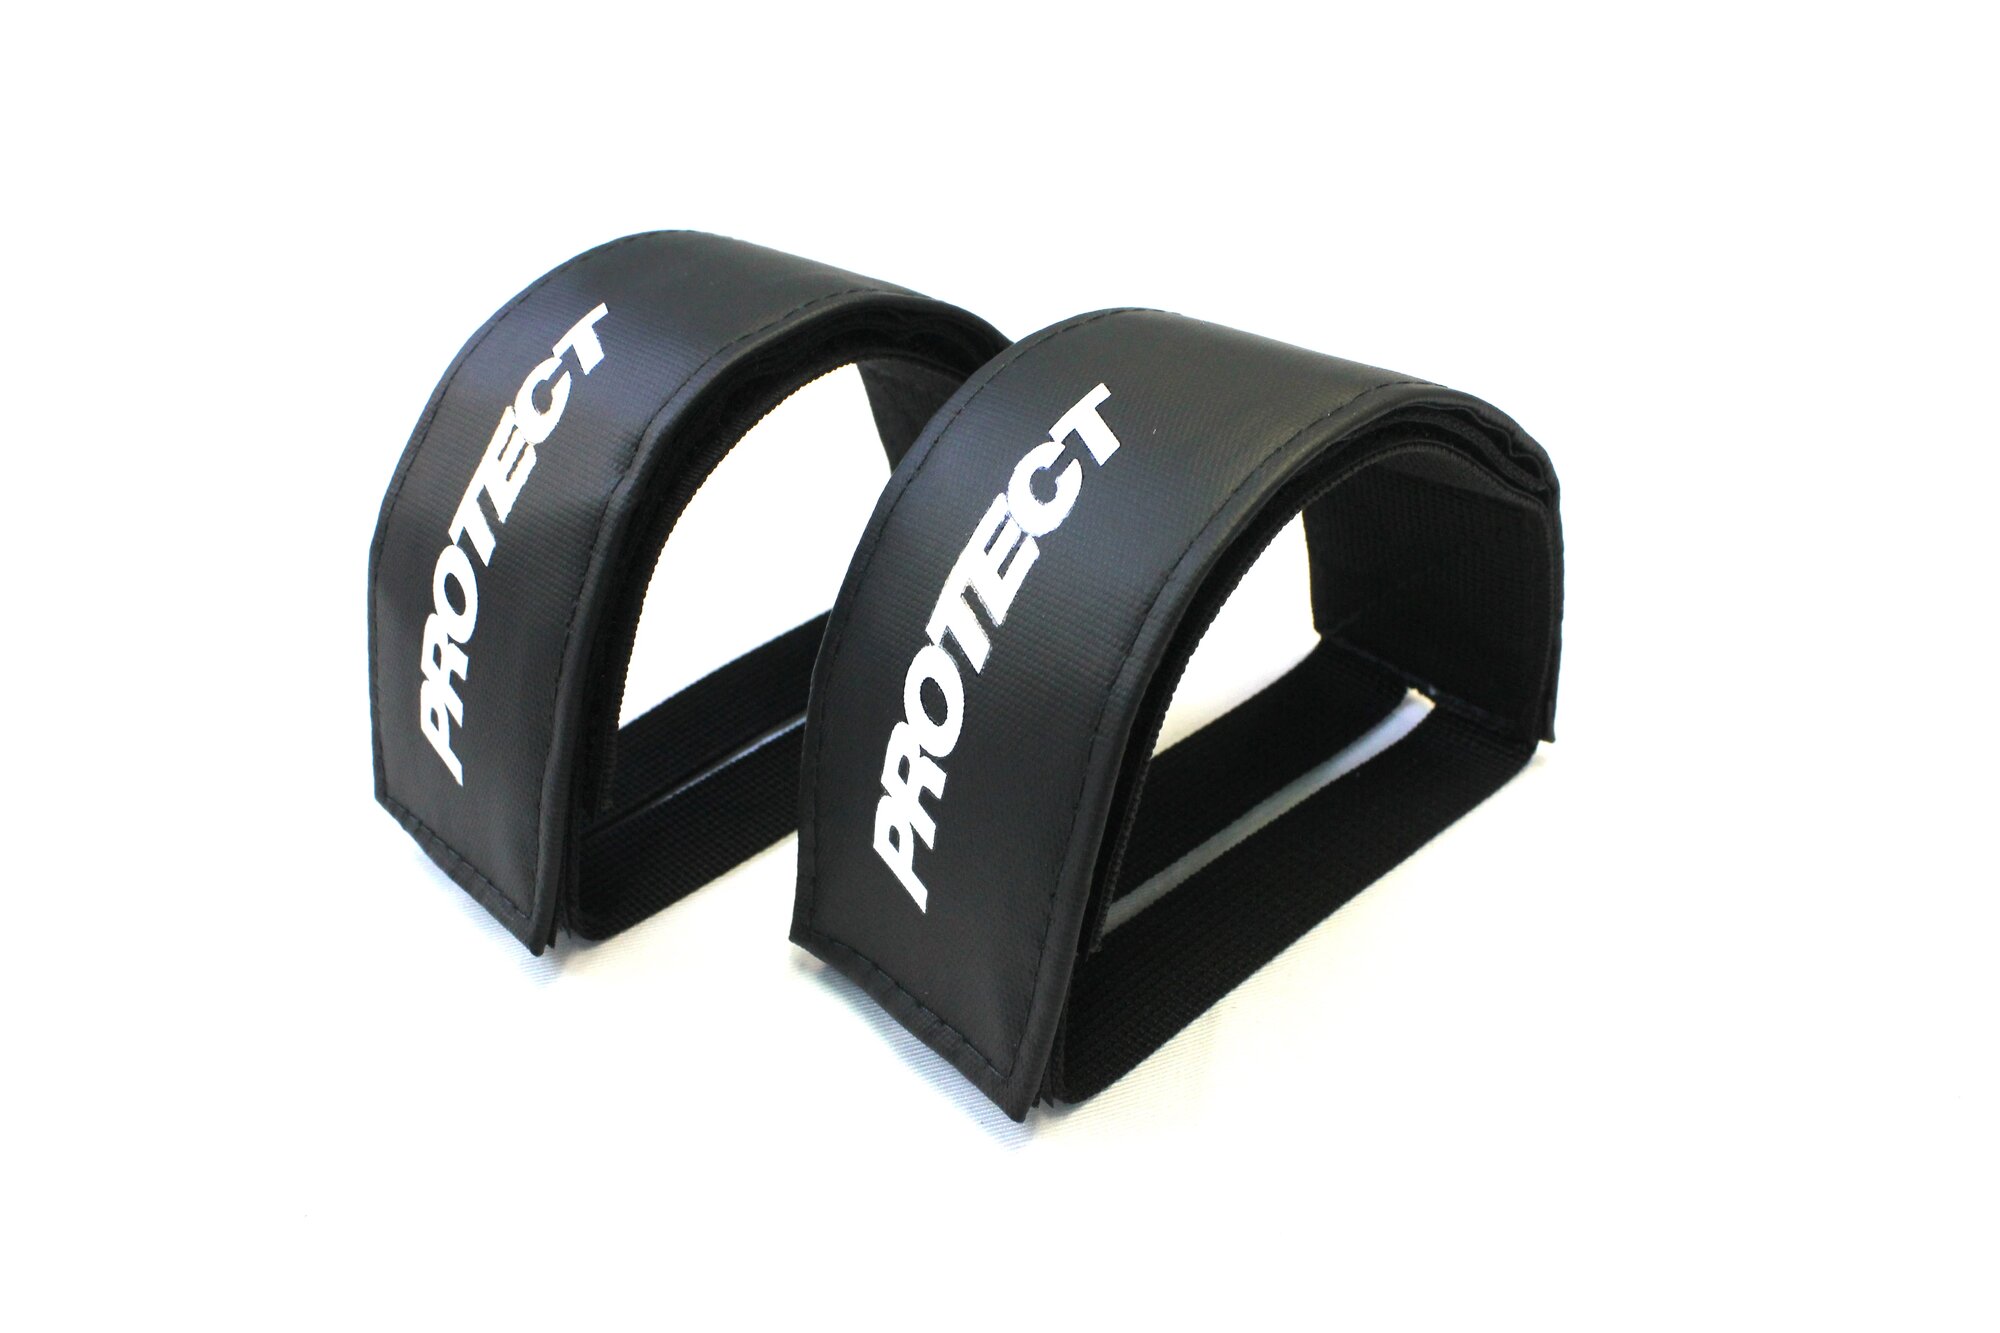 Стрепы для педалей велосипеда 2 штуки, р-р 48,5х5 см, цвет черный PROTECT™